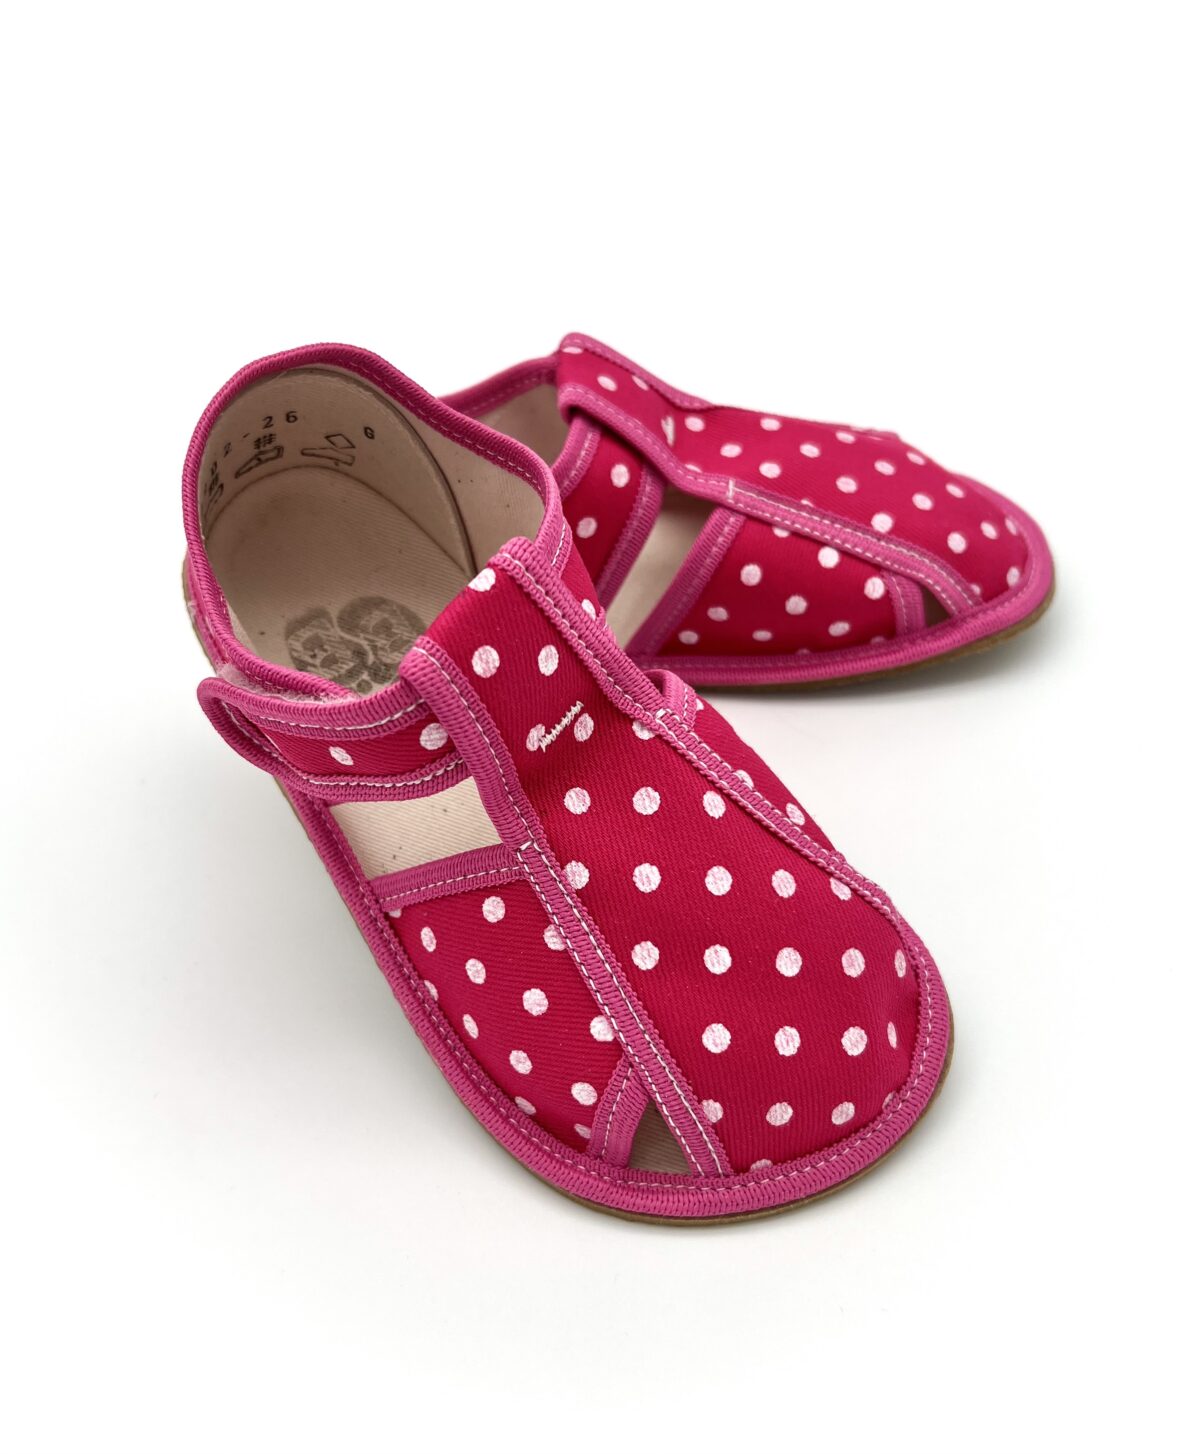 Baby Bare sisejalatsid Pink Dot Laste barefoot jalatsid - HellyK - Kvaliteetsed lasteriided, villariided, barefoot jalatsid